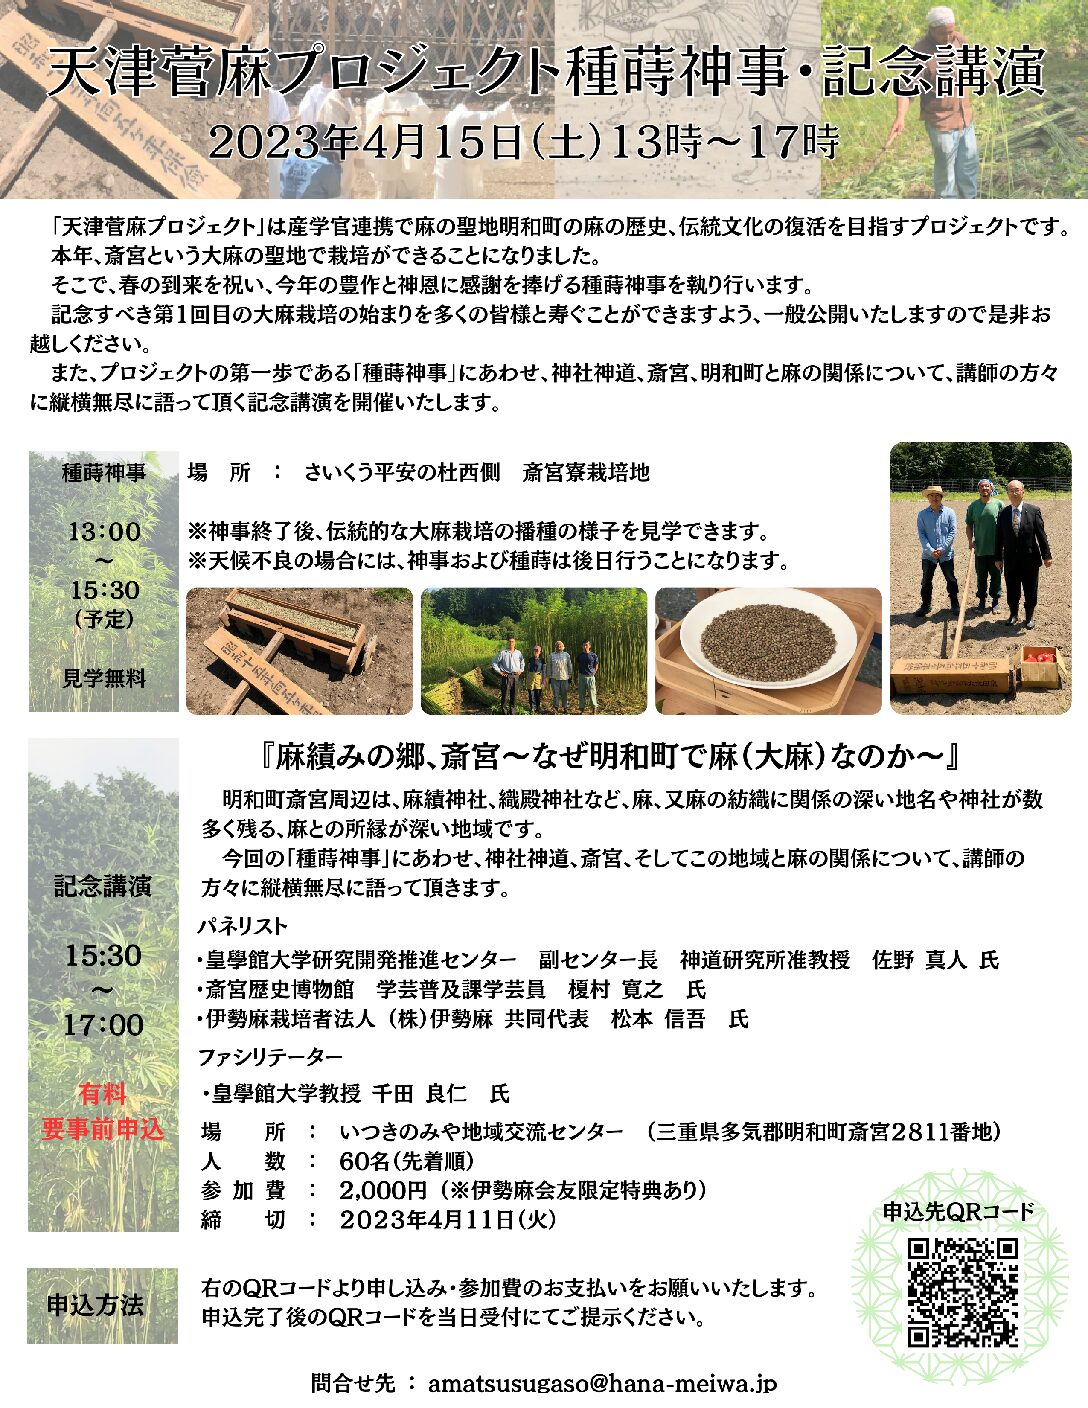 2023年4月15日(土)に「天津菅麻プロジェクト種蒔神事・記念講演」を開催致します。